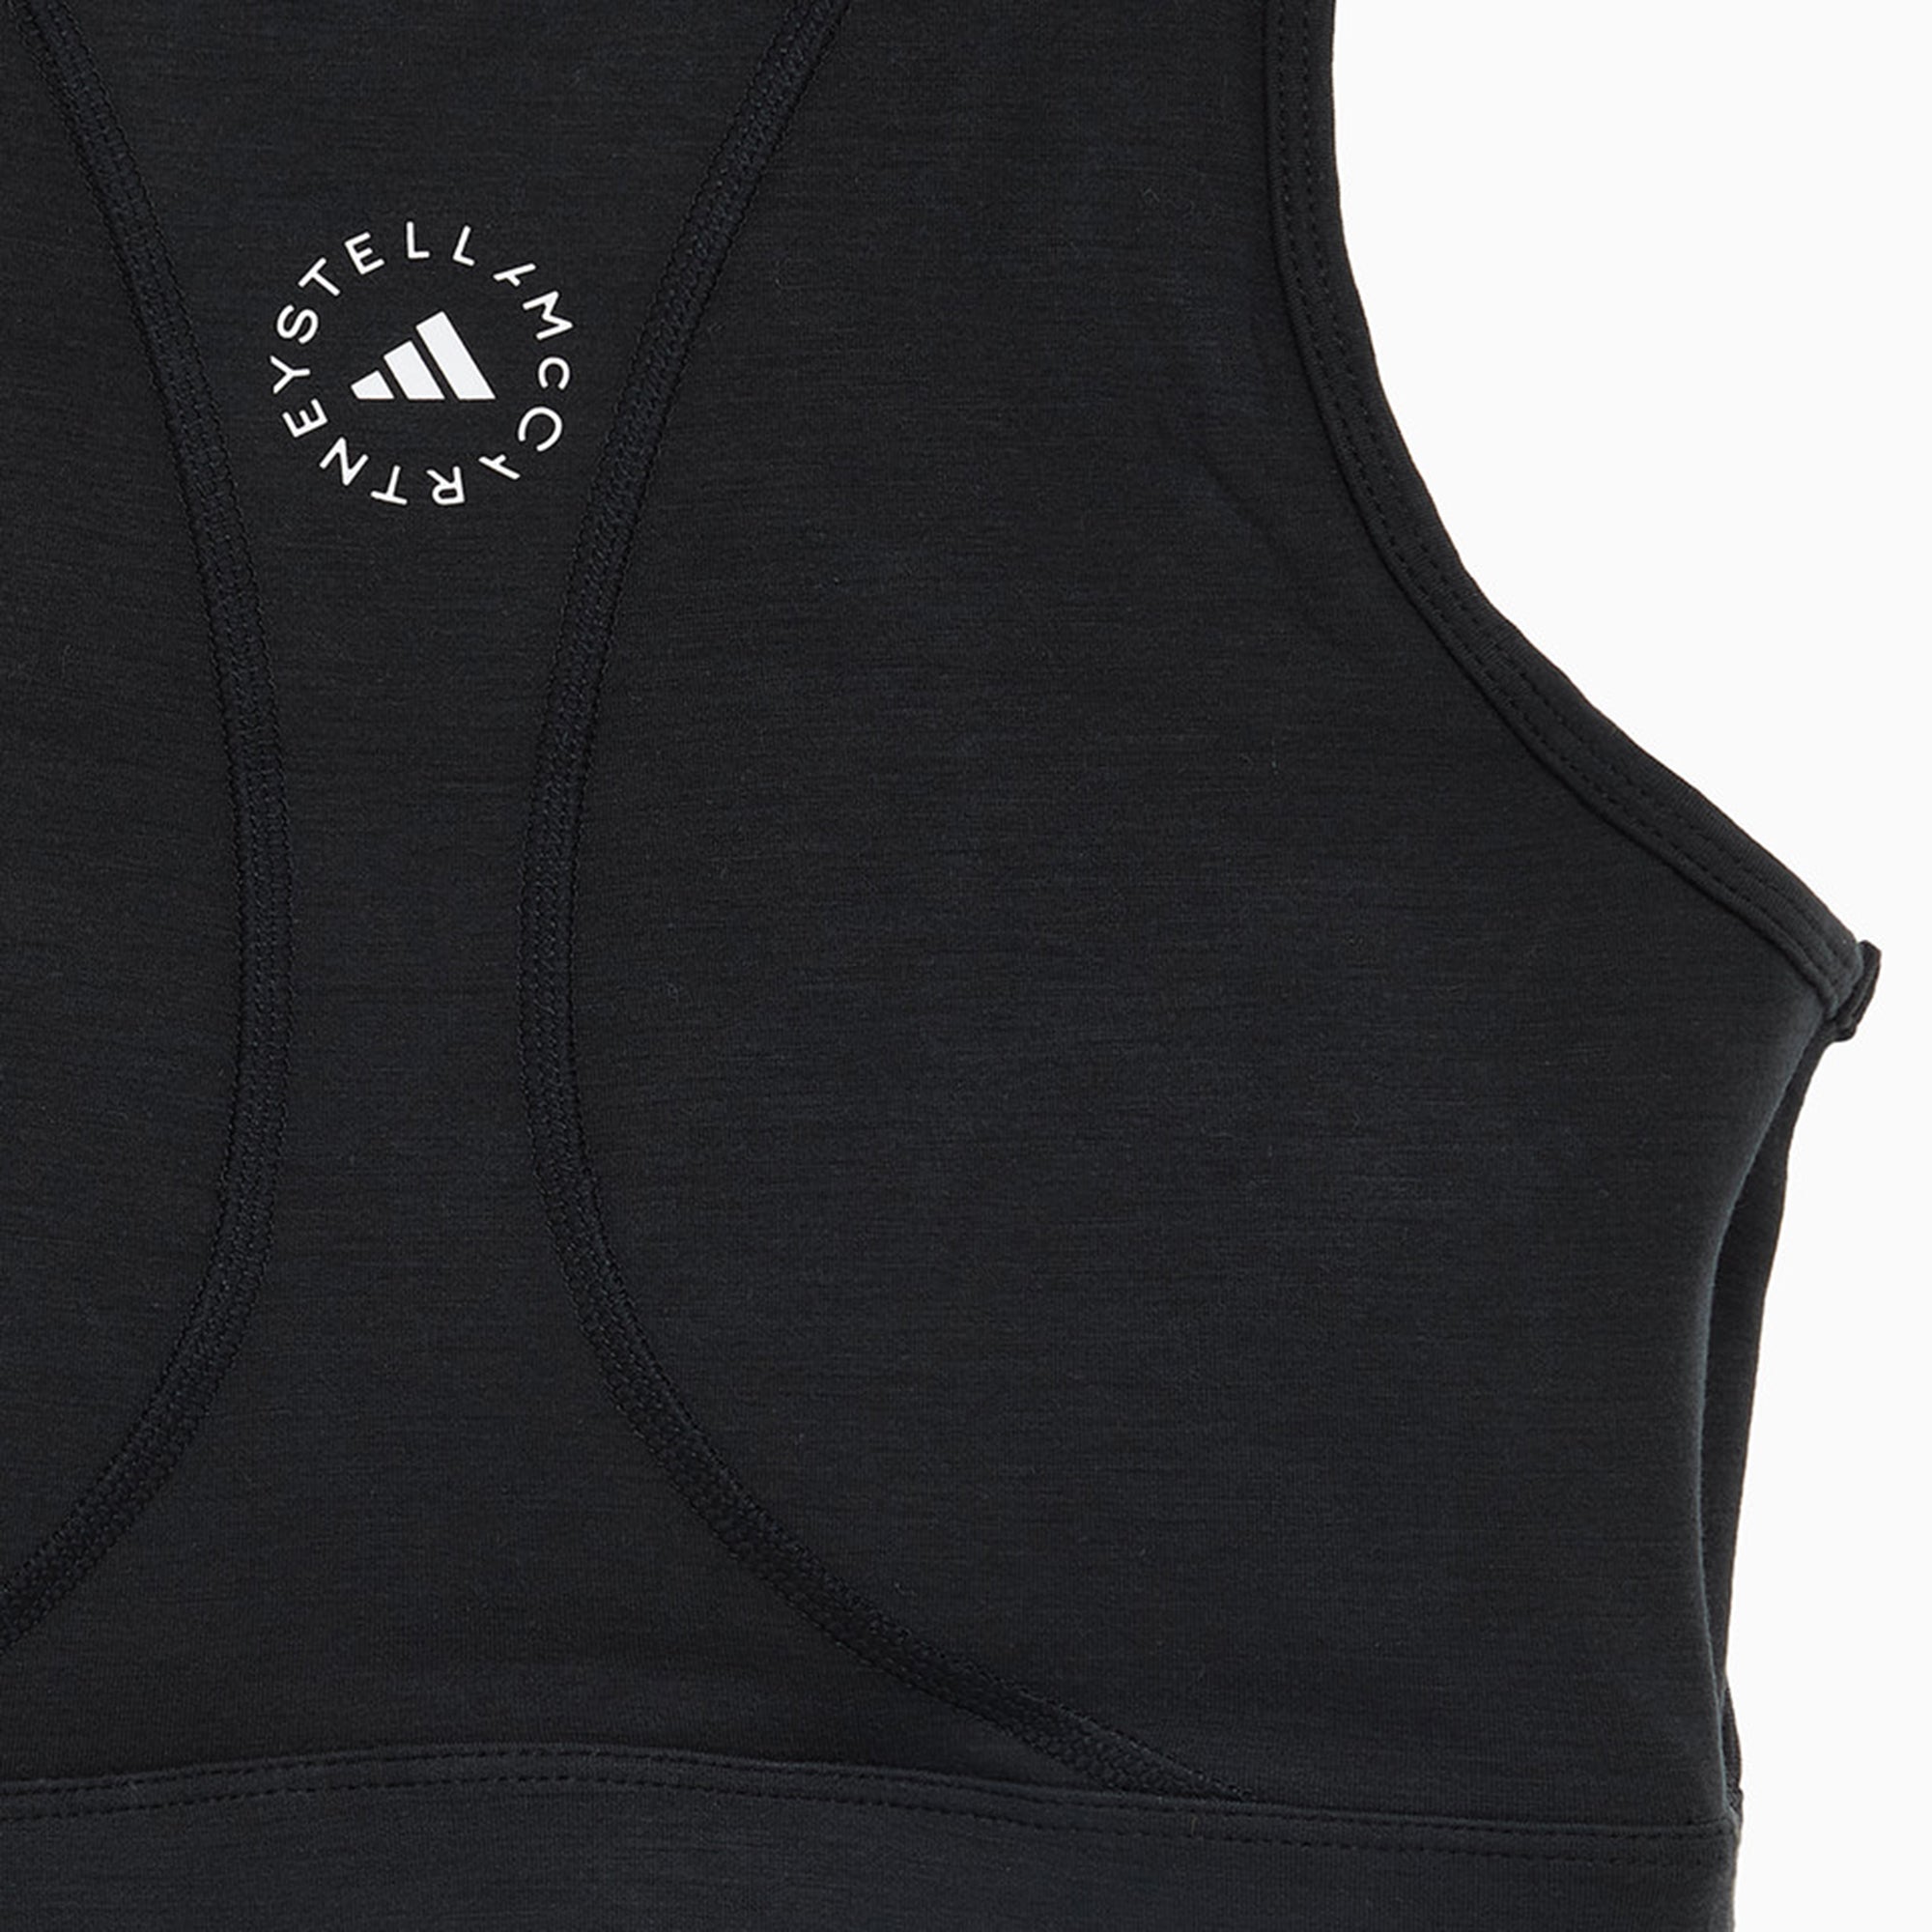 Adidas by Stella McCartney TrueStrength Yoga Crop Top Black - Y-3Crop Tops